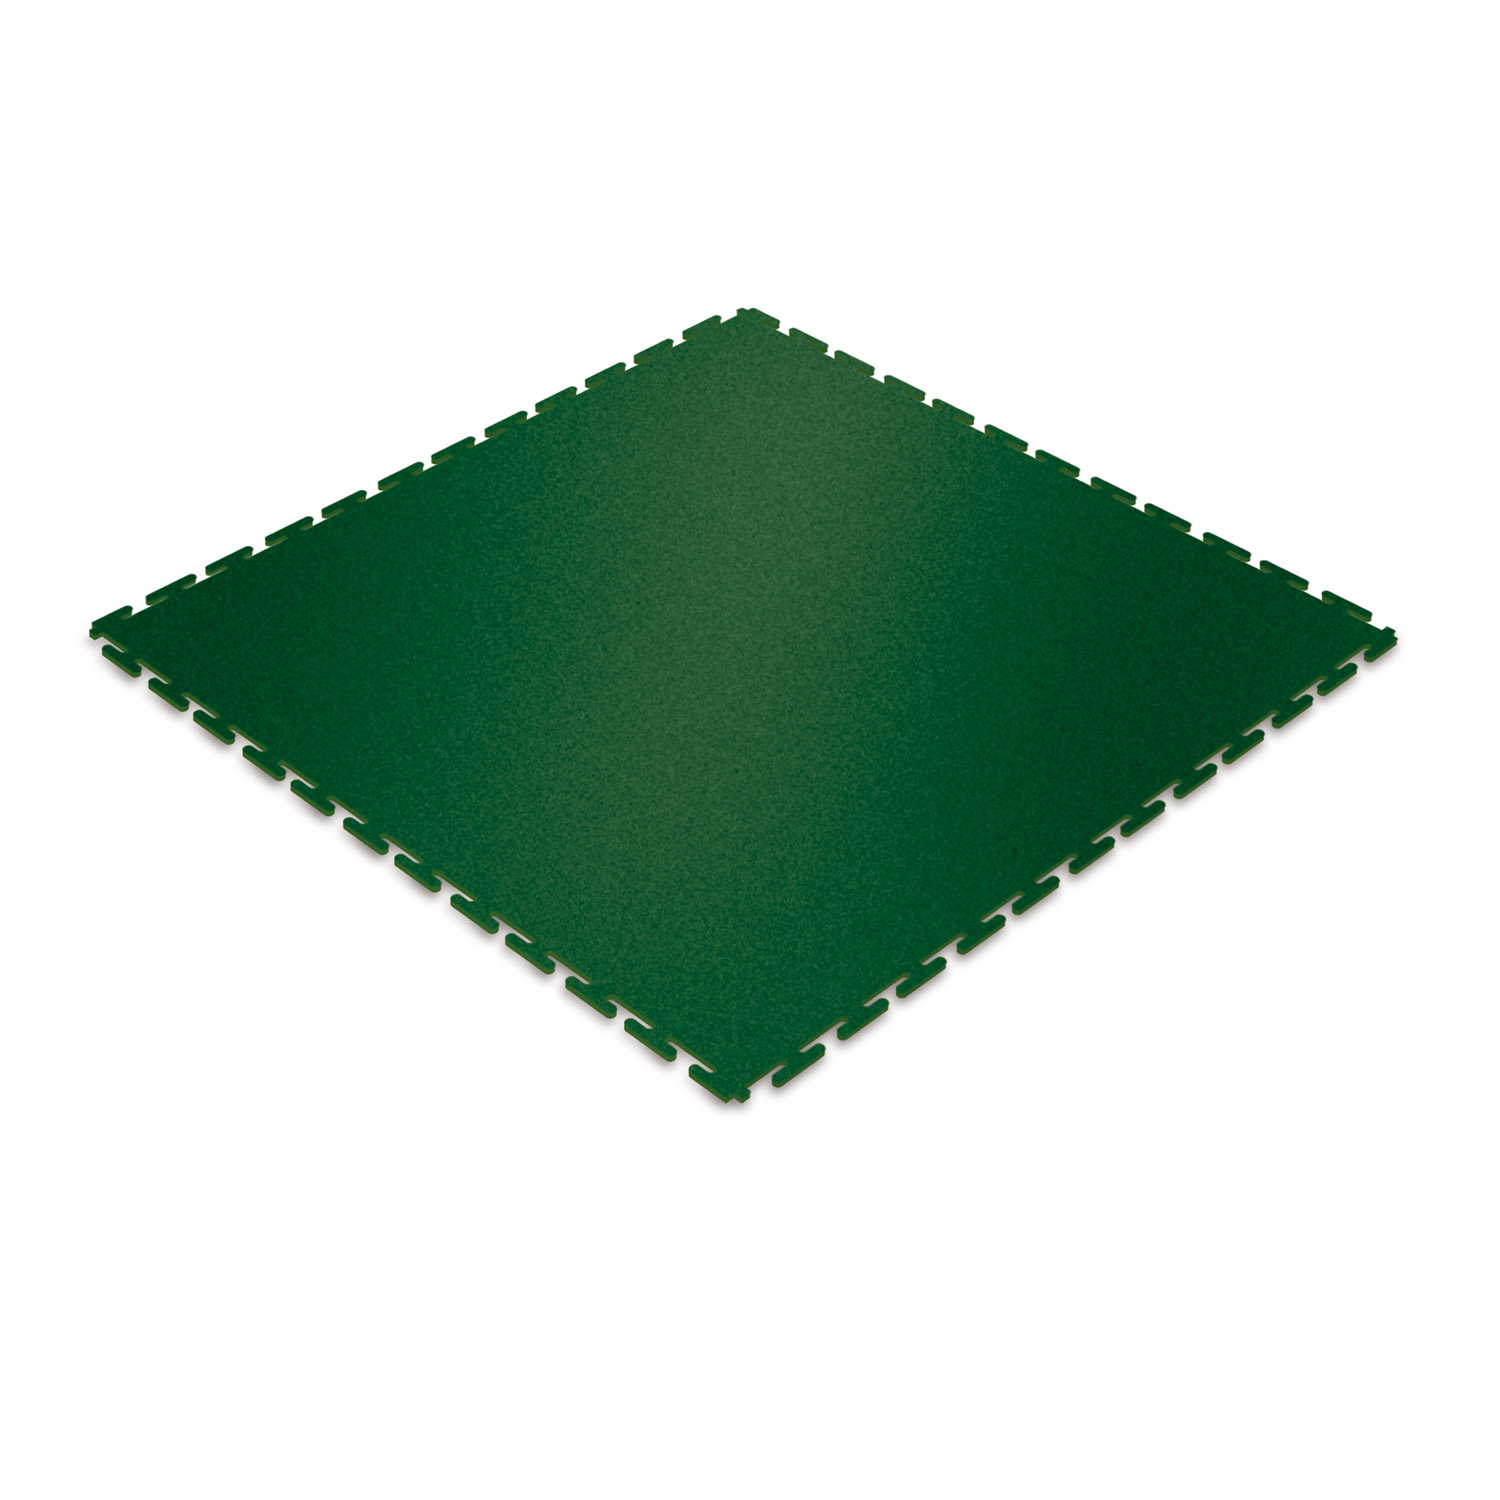 Standard floor tile (green/textured)